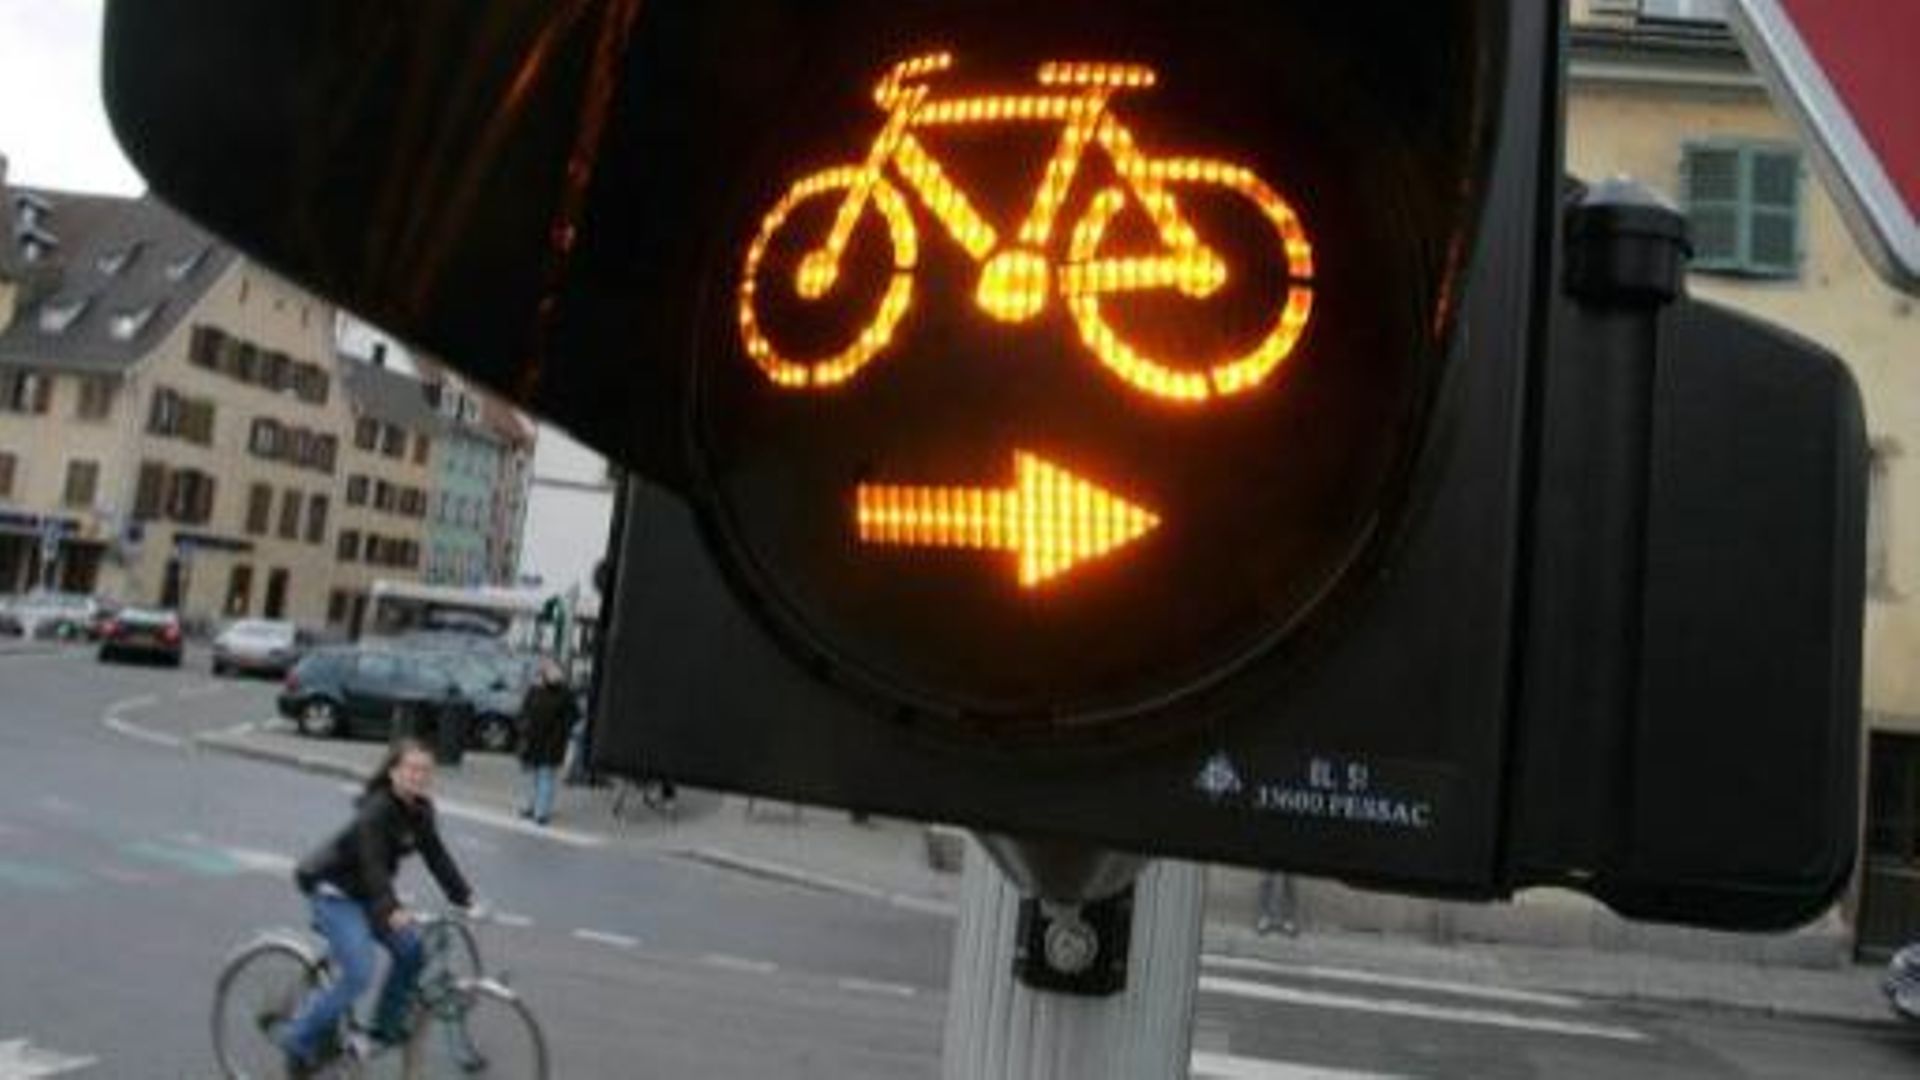 Les cyclistes pourraient bientôt traverser certains carrefours en toute légalité.